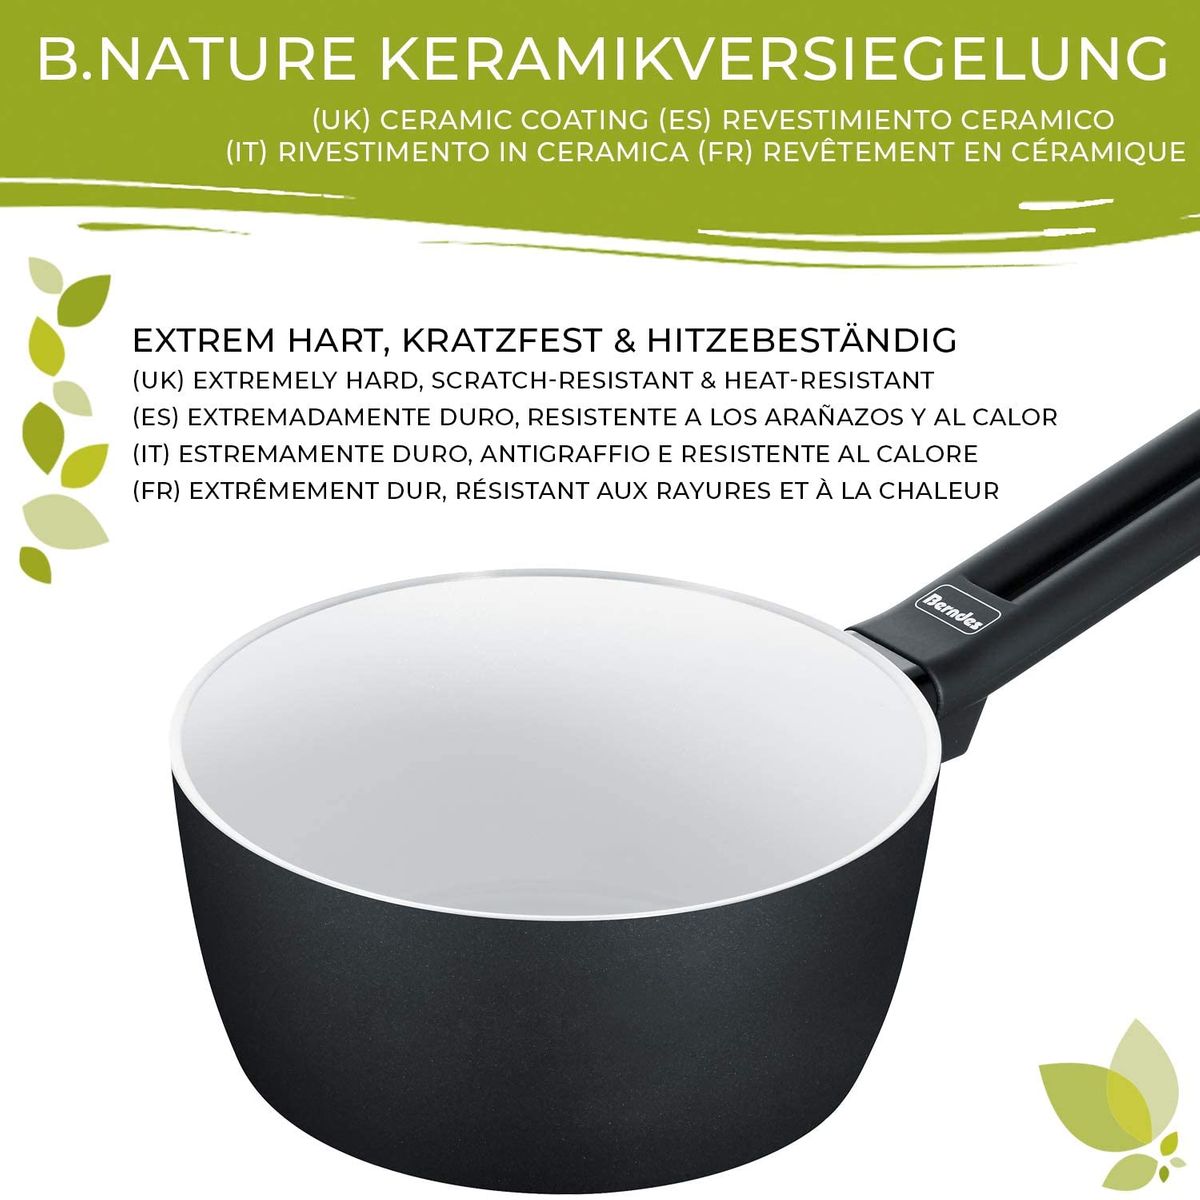 Berndes 013301 Aluminium Induction Smart Cookware Set 4 Pieces Aluminium Black / White